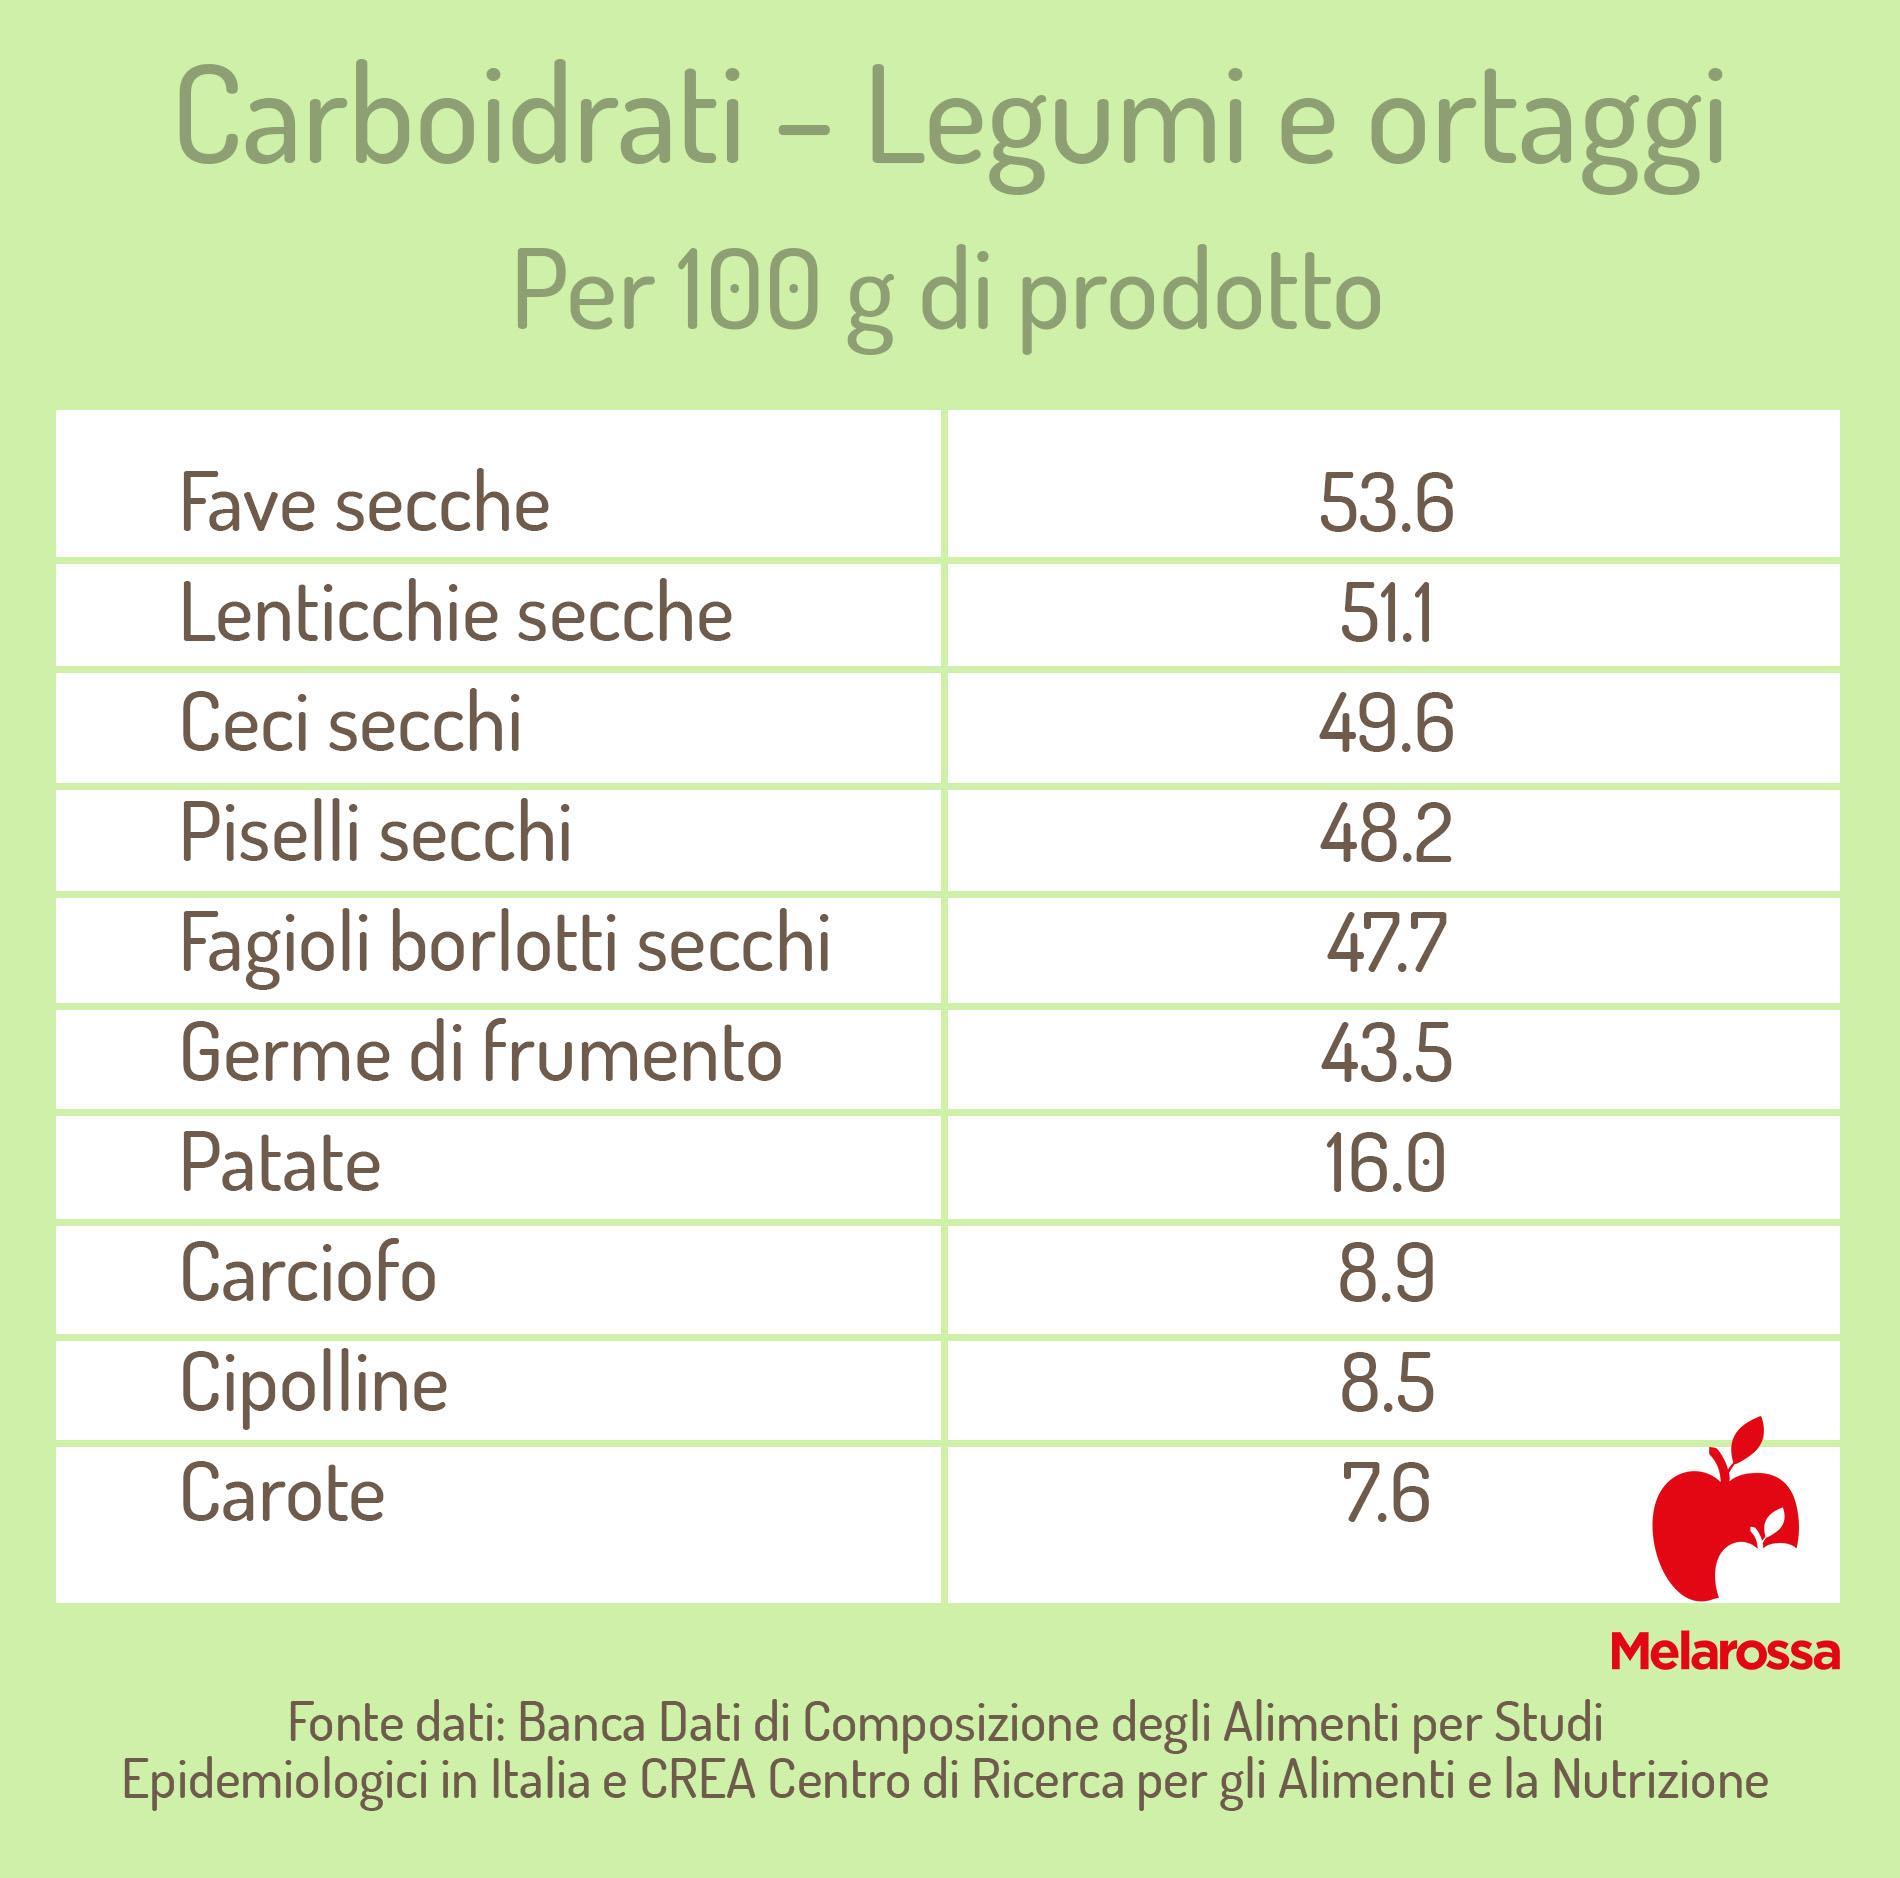 tabella dei legumi e ortaggi ricchi di carboidrati